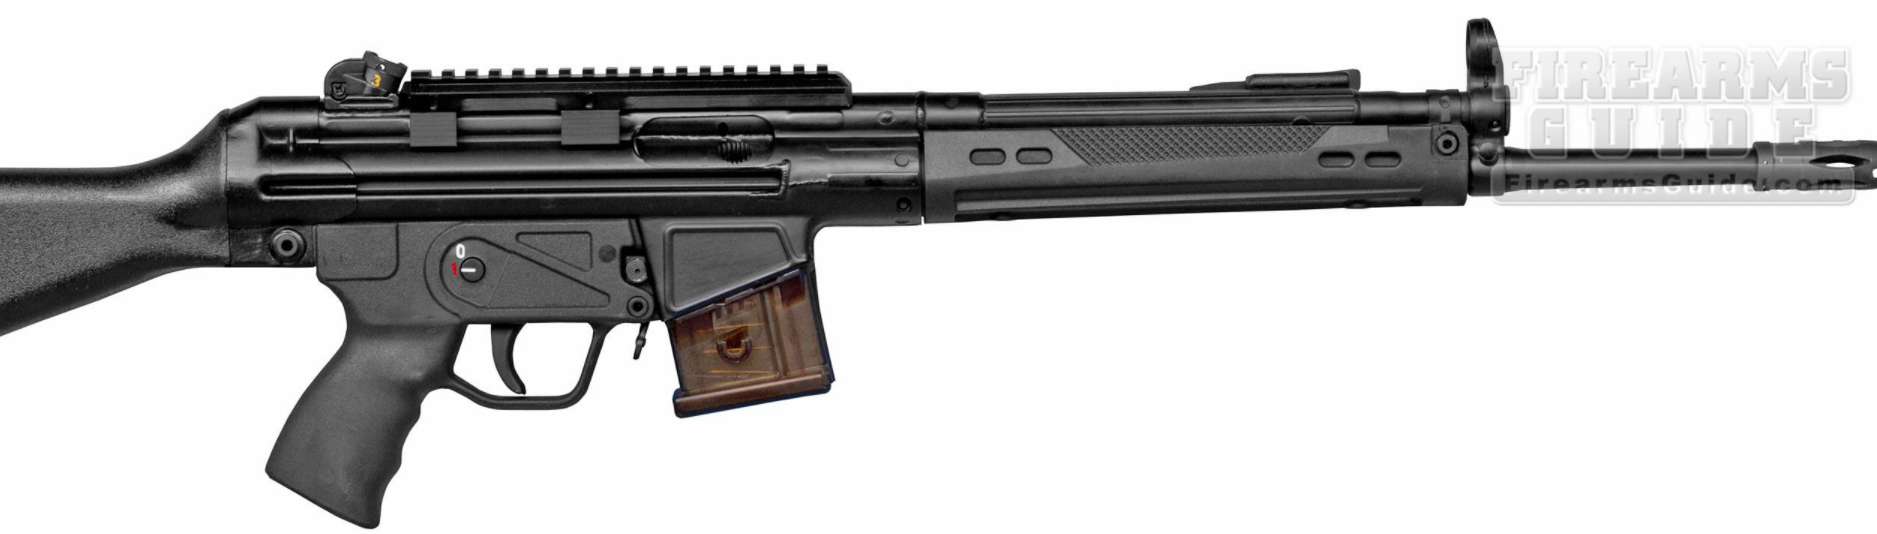 Zenith Firearms Z-43